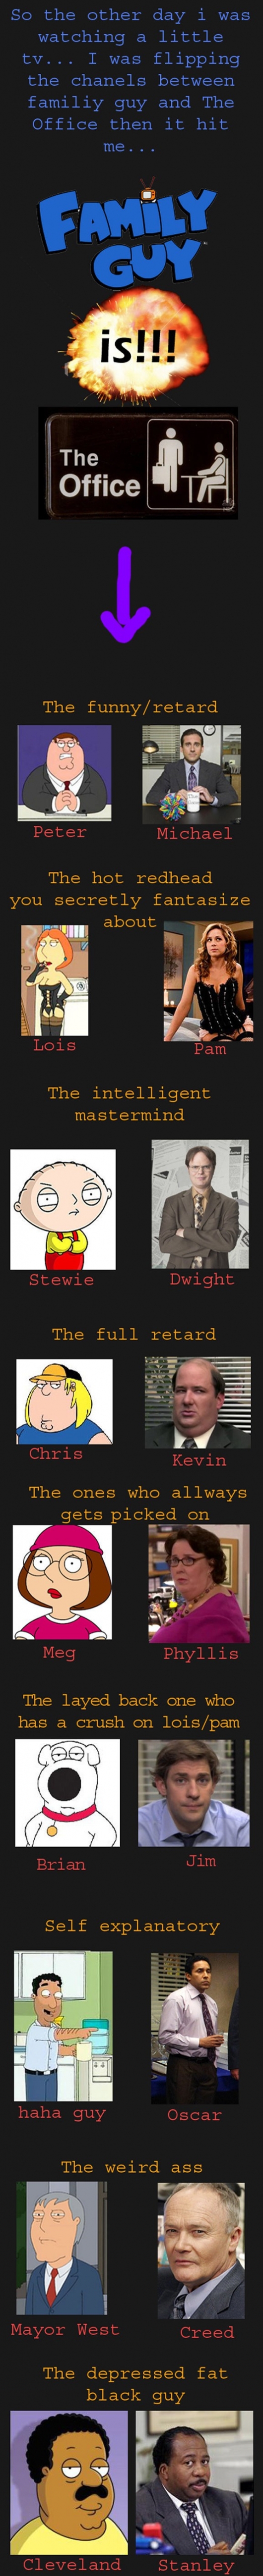 Family Guy vs. The Office